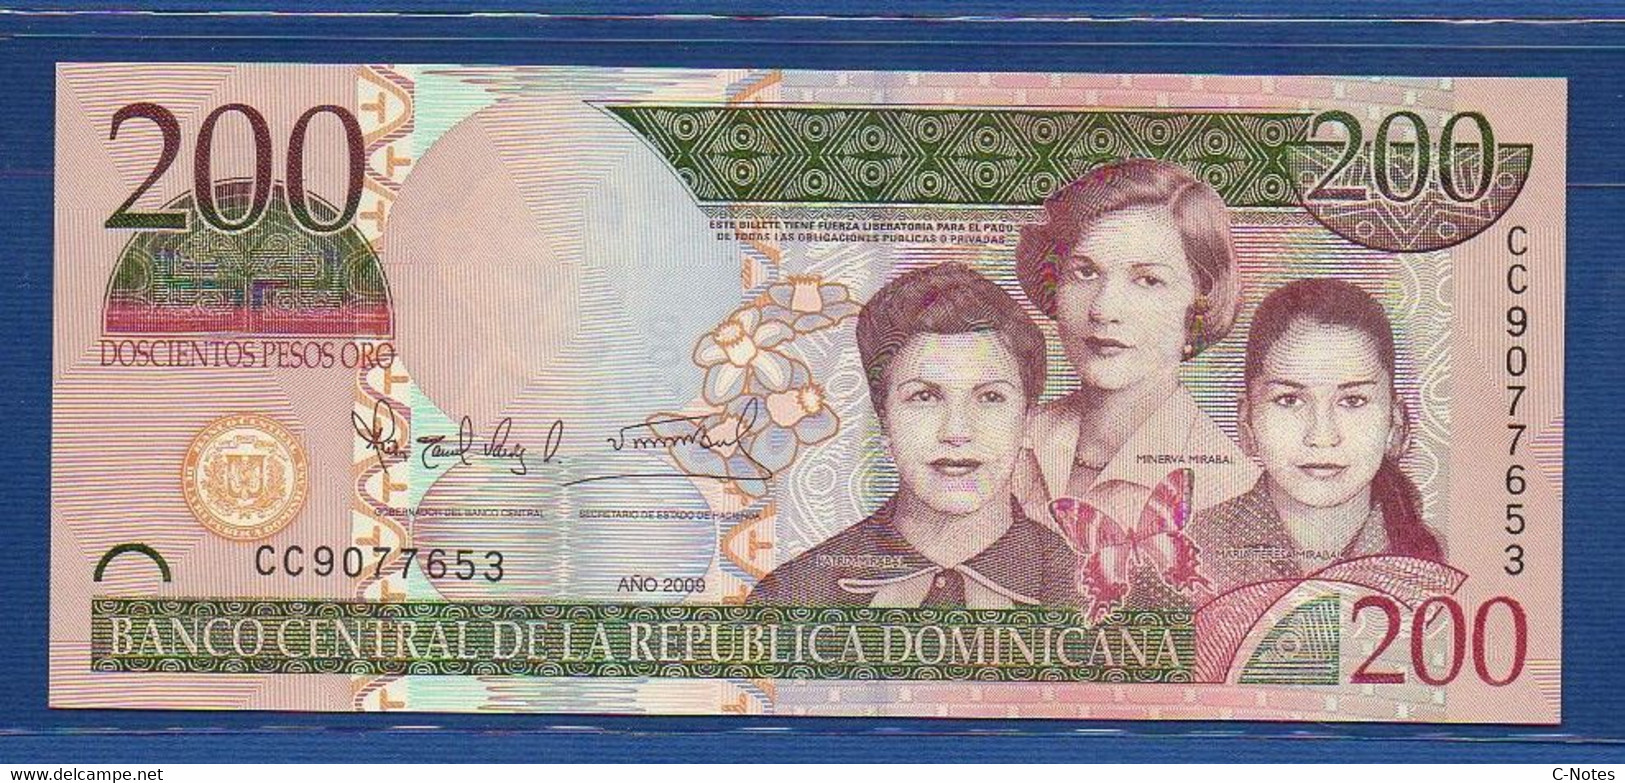 DOMINICAN REPUBLIC - P.178A – 200 Pesos Oro 2009 UNC, Serie CC 9077653 - Dominikanische Rep.